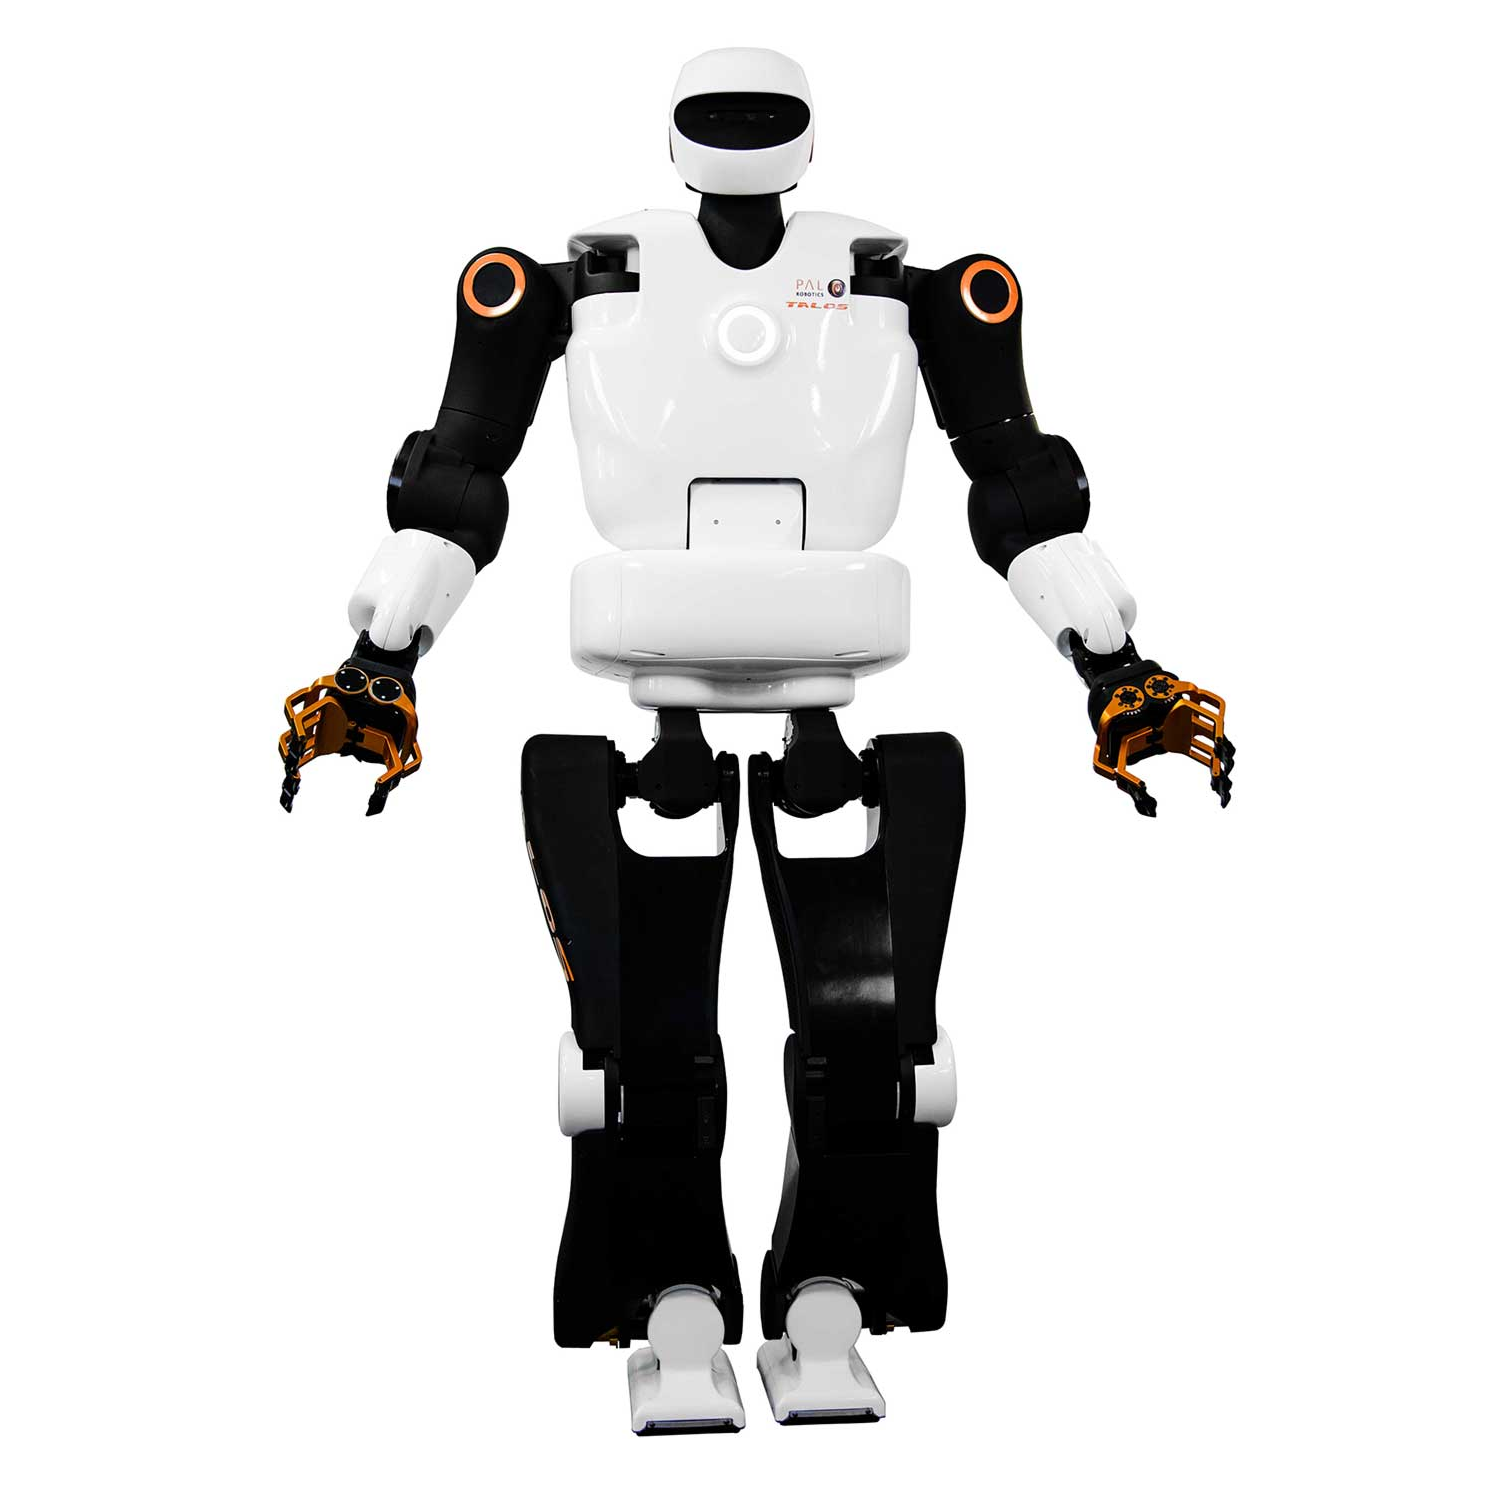 robot humanoide pal robotics talos controlable mouvement reactif et dynamique intelligence artificielle 1